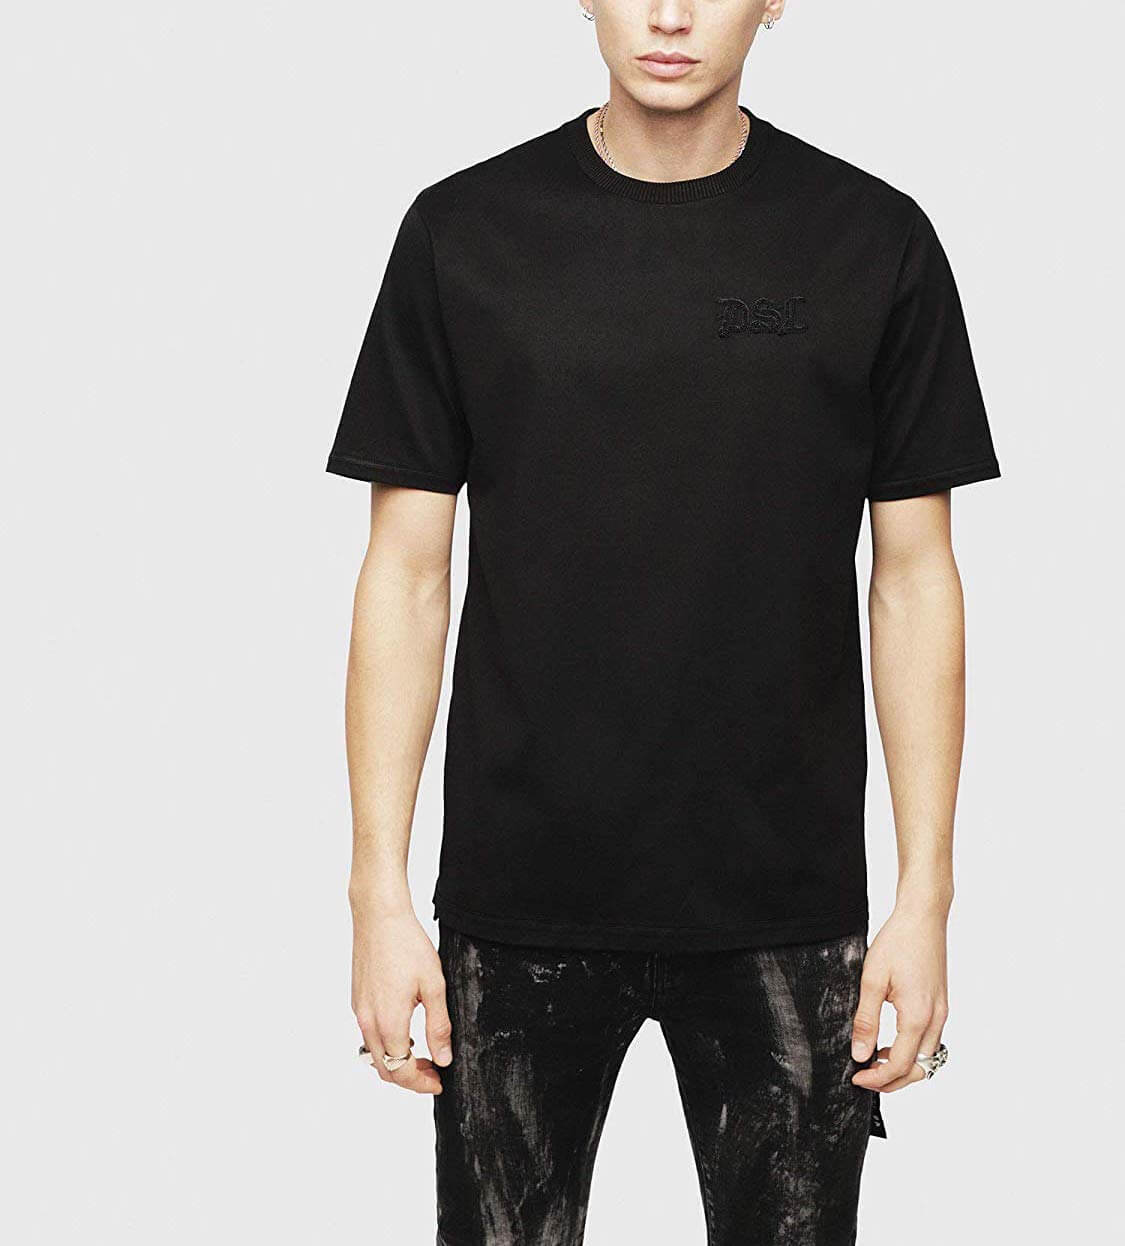 黒tシャツ コーデ特集 インナー使いでも高ポテンシャルを発揮するデキるやつ メンズファッションメディア Otokomae 男前研究所